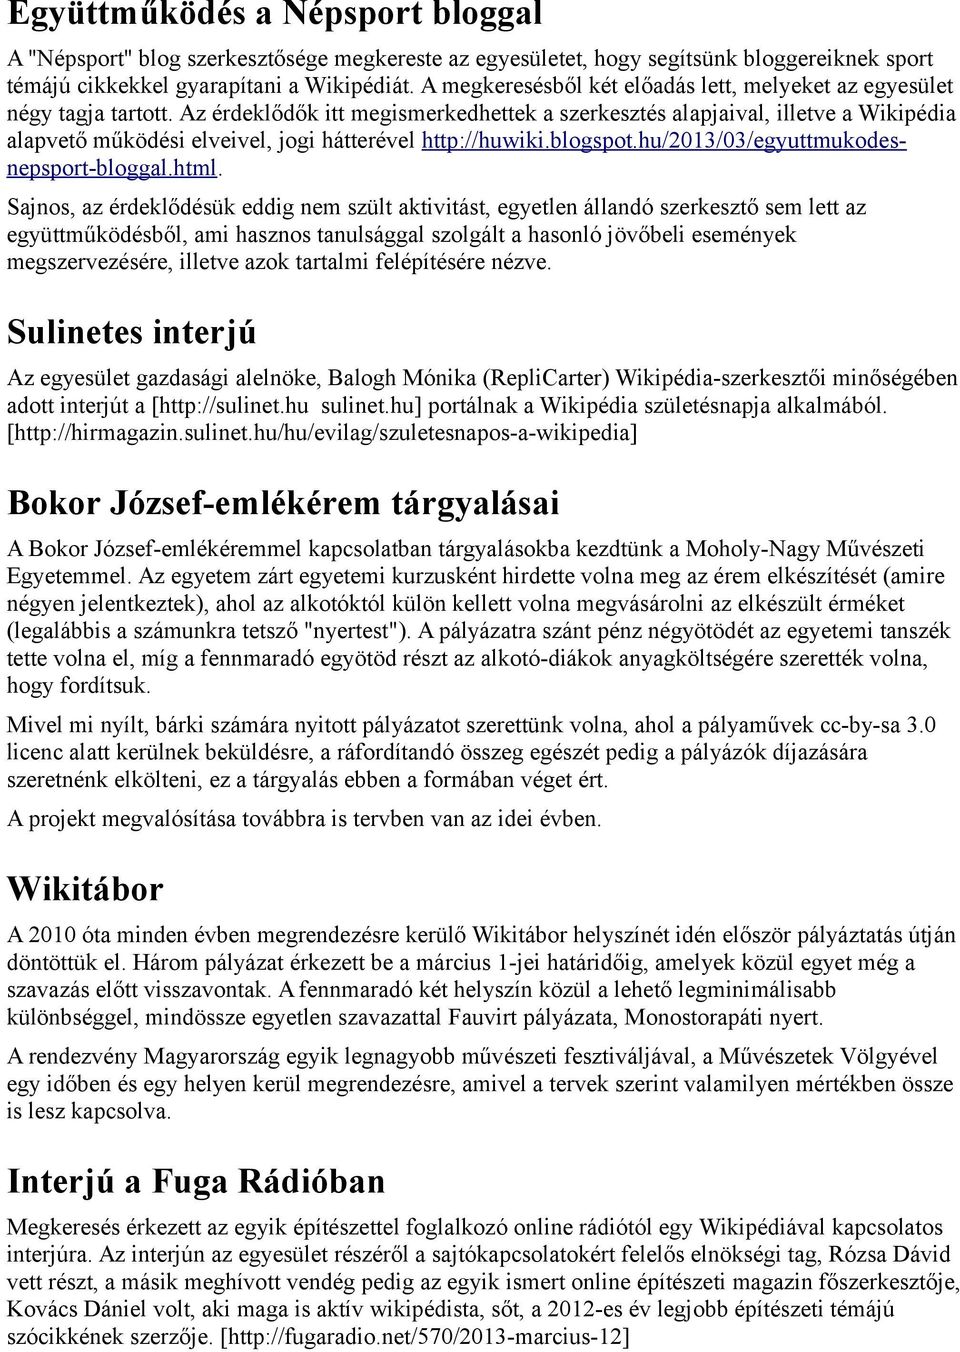 Az érdeklődők itt megismerkedhettek a szerkesztés alapjaival, illetve a Wikipédia alapvető működési elveivel, jogi hátterével http://huwiki.blogspot.hu/2013/03/egyuttmukodesnepsport-bloggal.html.